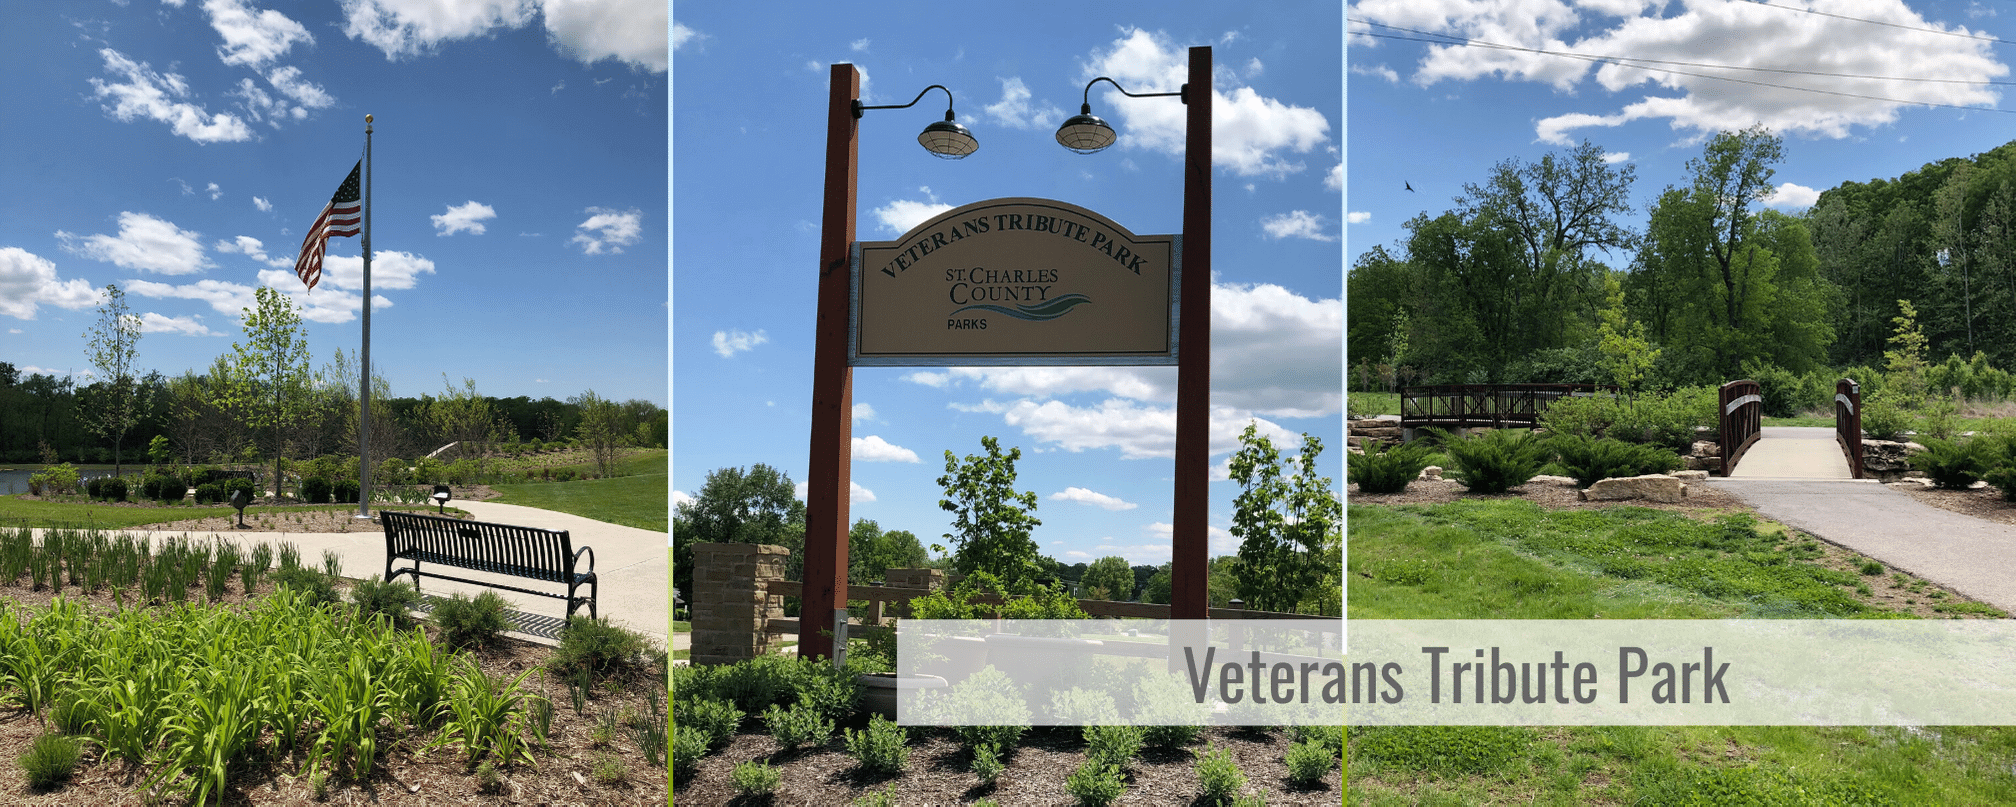 Veterans Tribute Park Weldon Spring